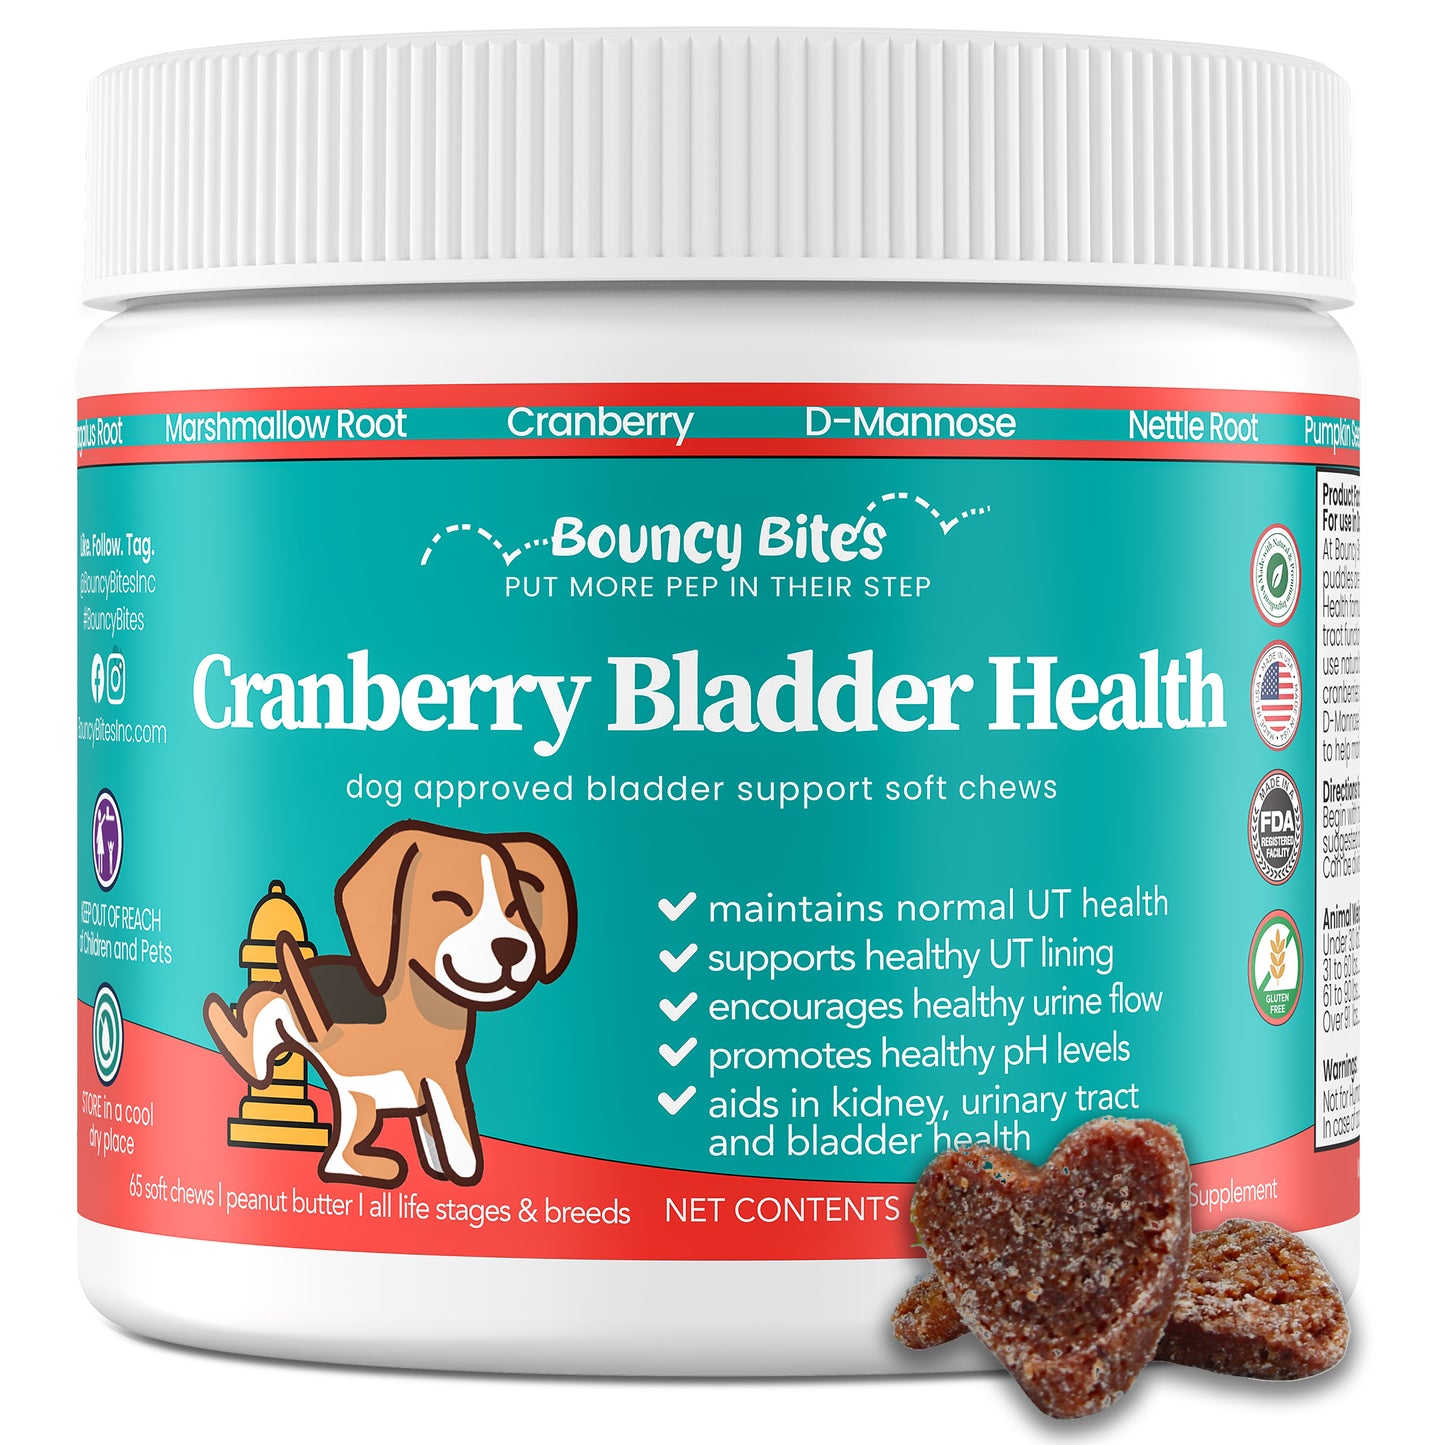 Cranberry Bladder Health